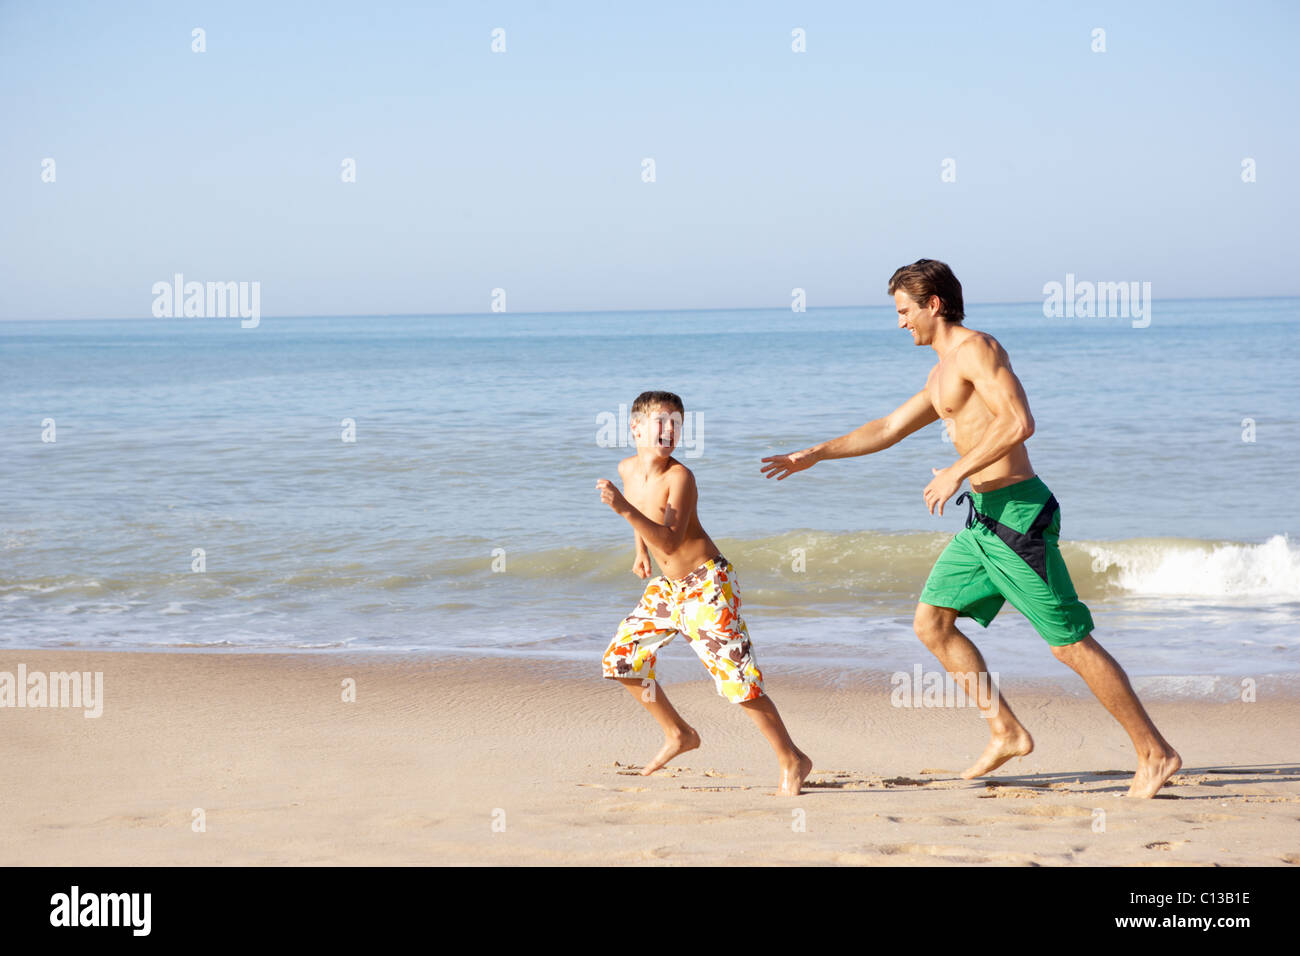 Vater jagt junge am Strand Stockfoto